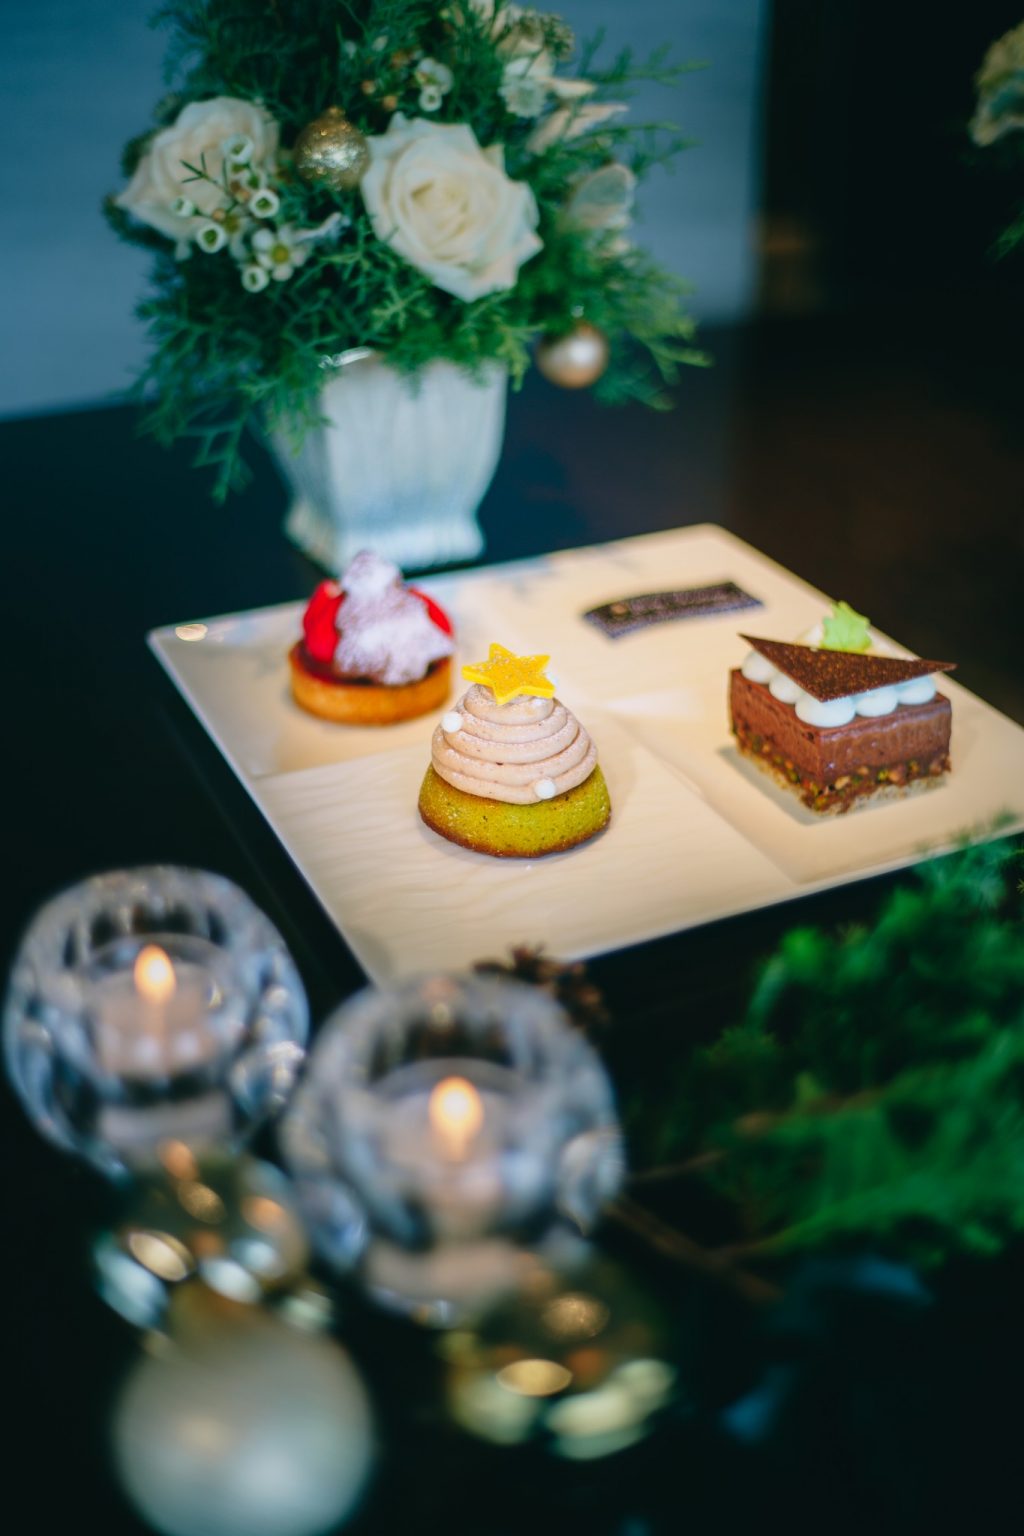 左上から「いちごとジンジャークッキーのクリスマスタルトレット」、「モンブランツリー」、「Noele ショコラアマンド」。